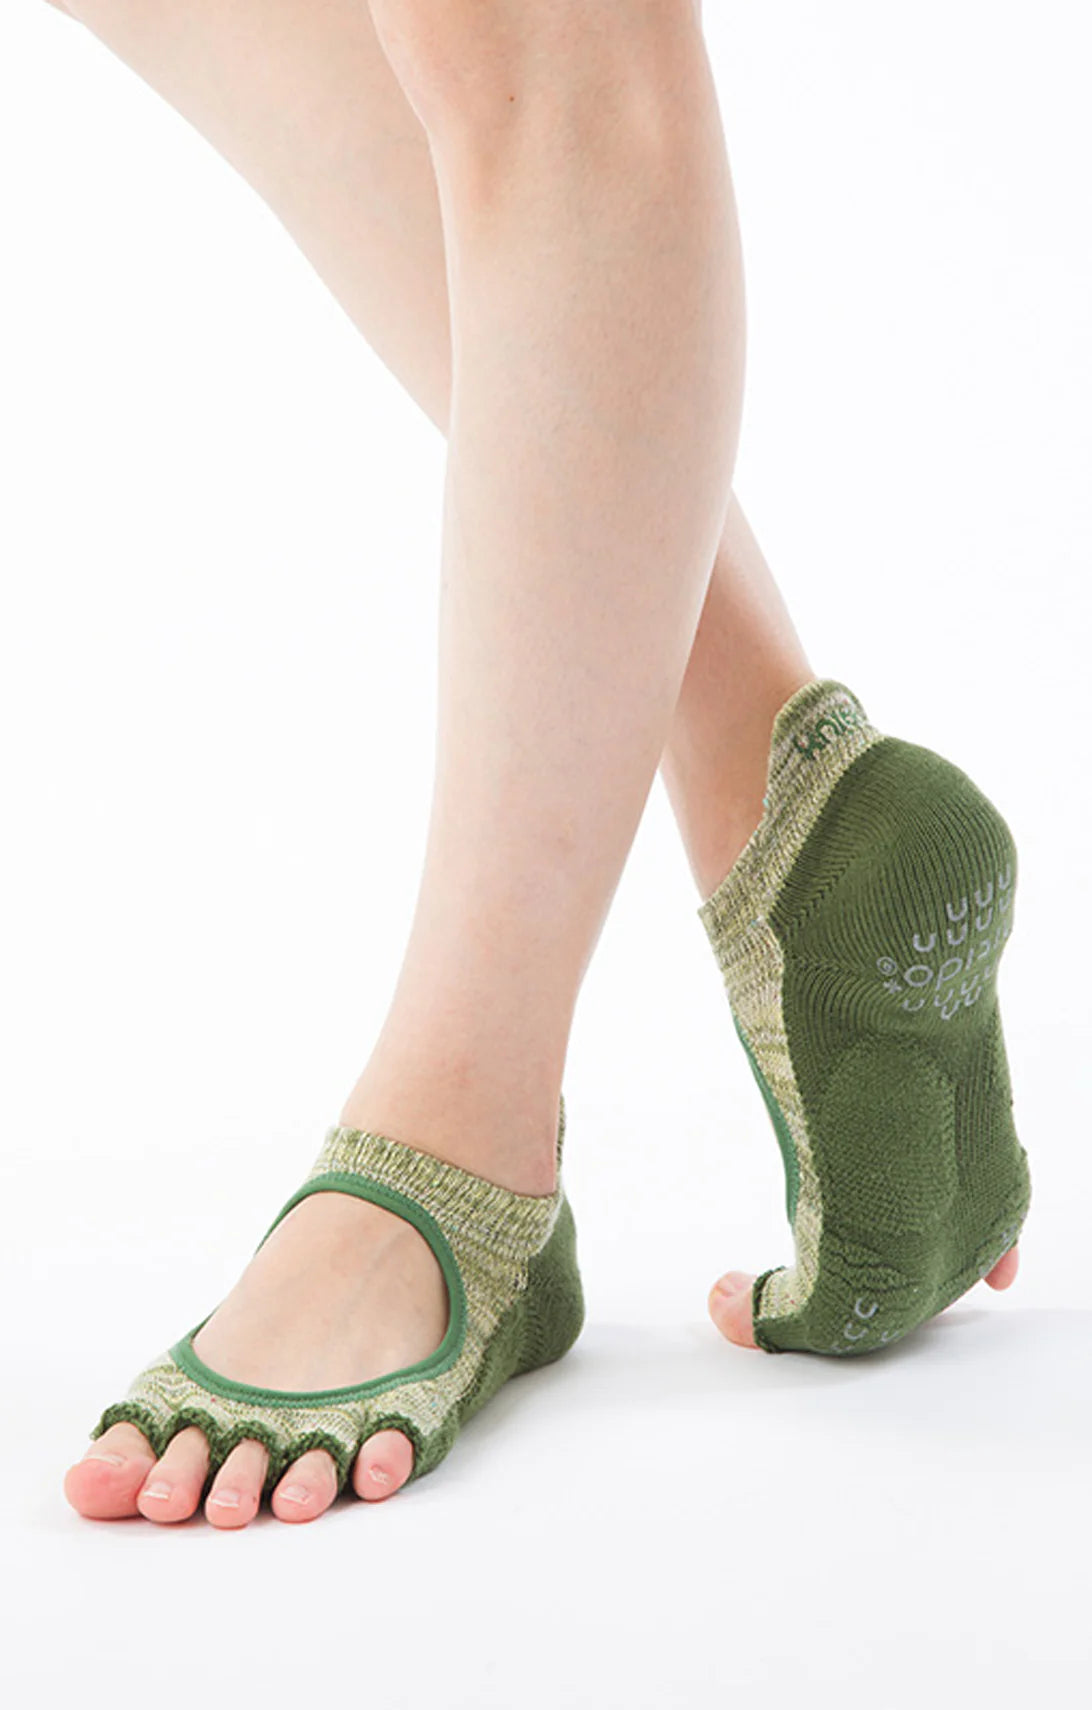 Knitido+ Yama Yoga and Pilates Toe Socks, Non-Slip, Size:UK 5.5-8